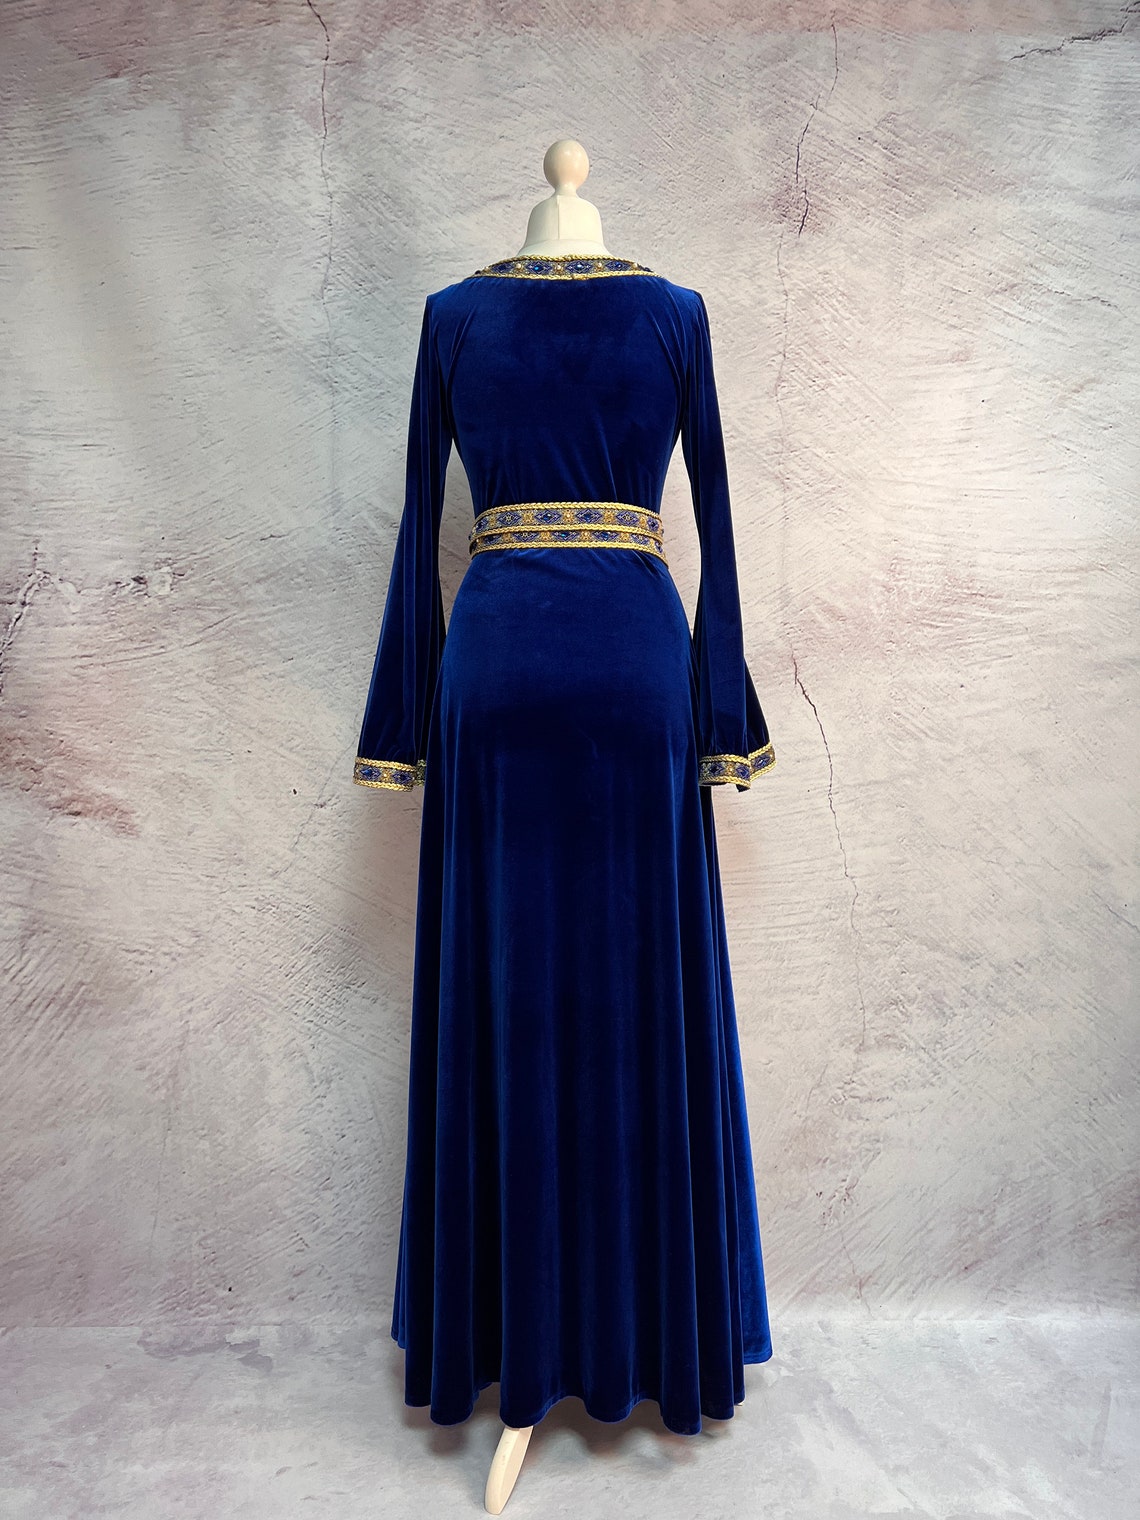 Elven Dress Velvet Medieval Dress Fantasy Wedding Dress - Etsy